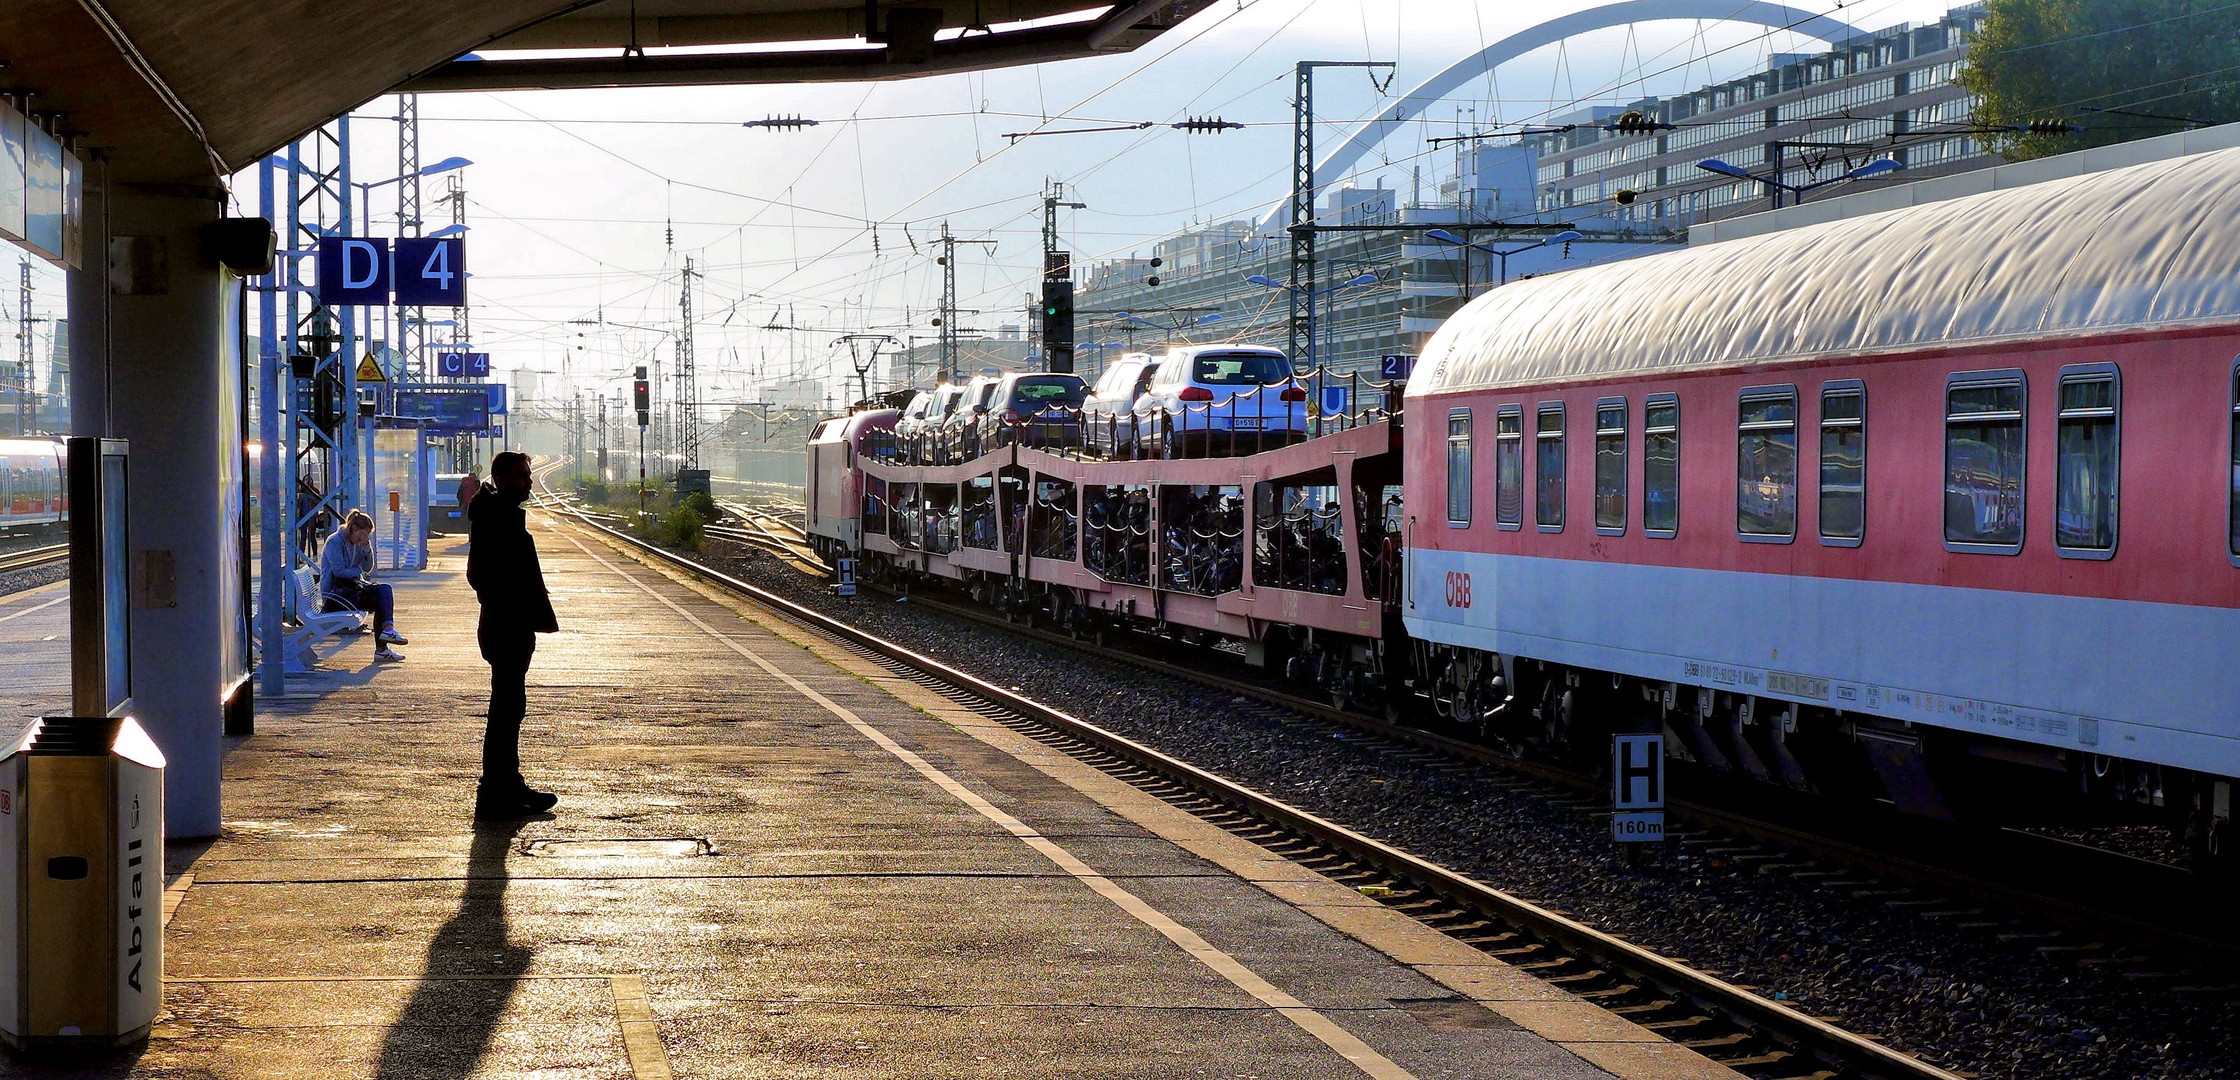 Morgenstimmung auf dem Bahnhof Köln-Messe/Deutz